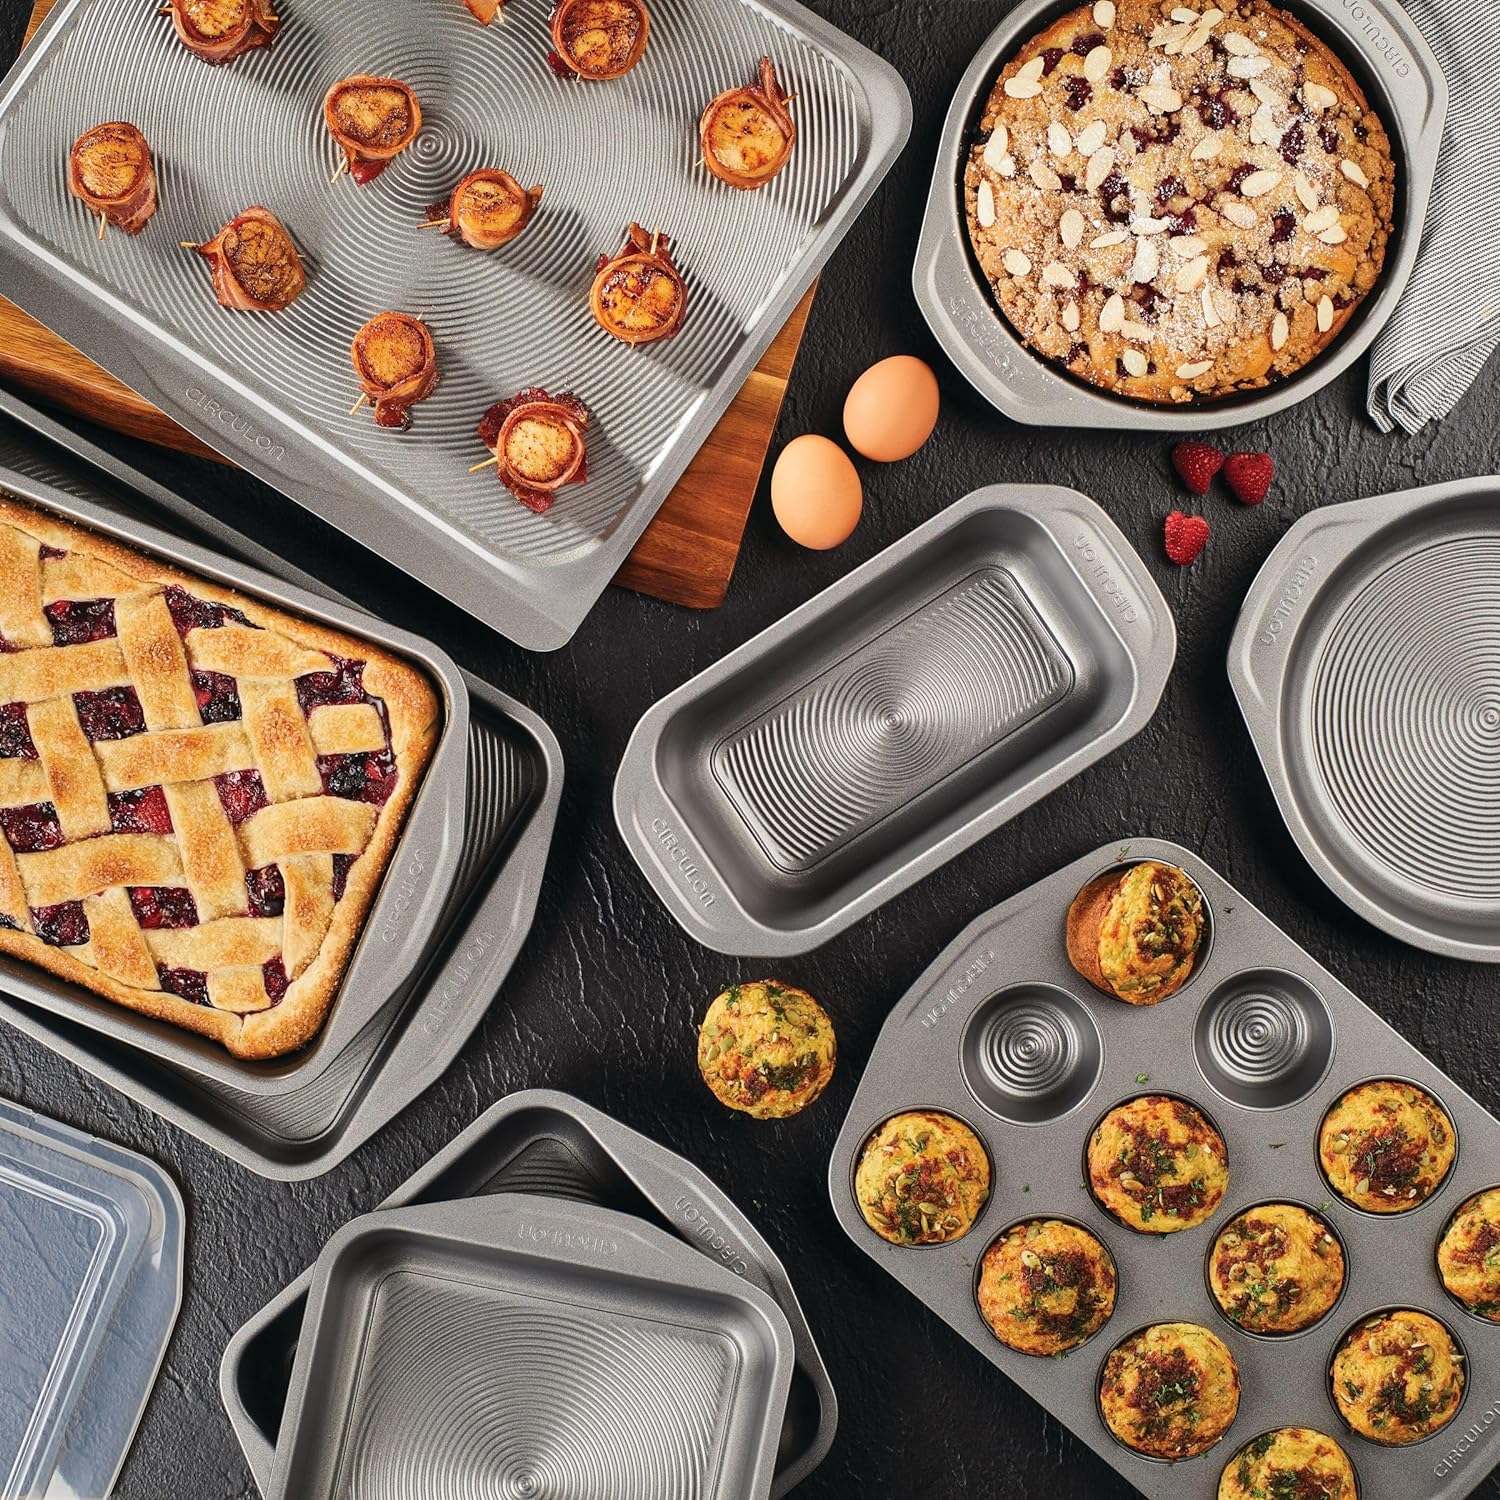 Circulon Total Nonstick Bakeware Set with Nonstick Bread Pan, Cookie Sheet, Baking  Pan, Baking Sheet, Cake Pan and Muffin/Cupcake Pan - 10 Piece, Gray